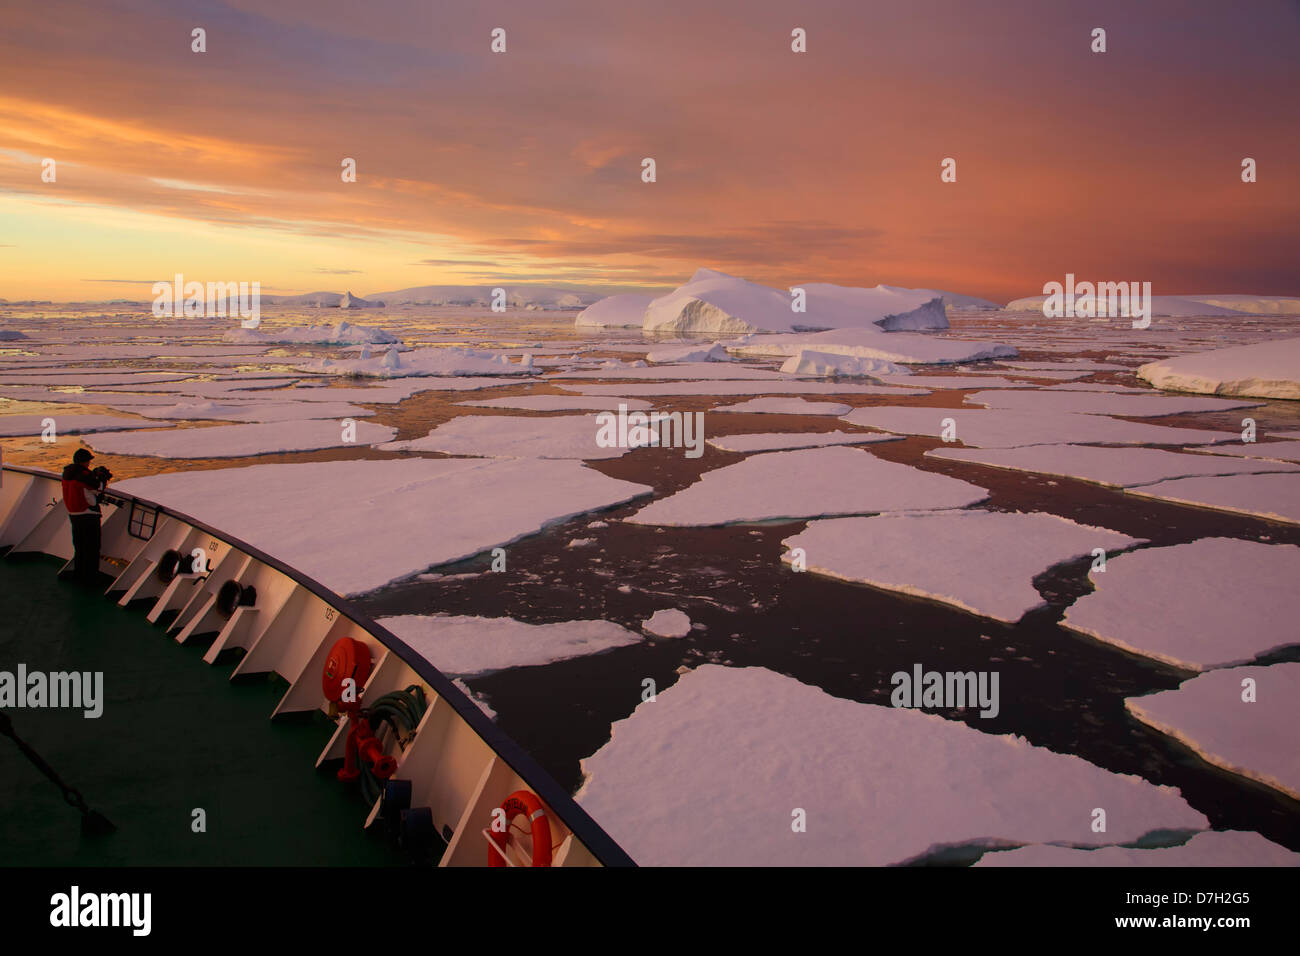 Icebreaker Ortelus muovendo attraverso il ghiaccio al tramonto / sunrise come siamo in viaggio al di sotto del circolo Antartico, l'Antartide. Foto Stock